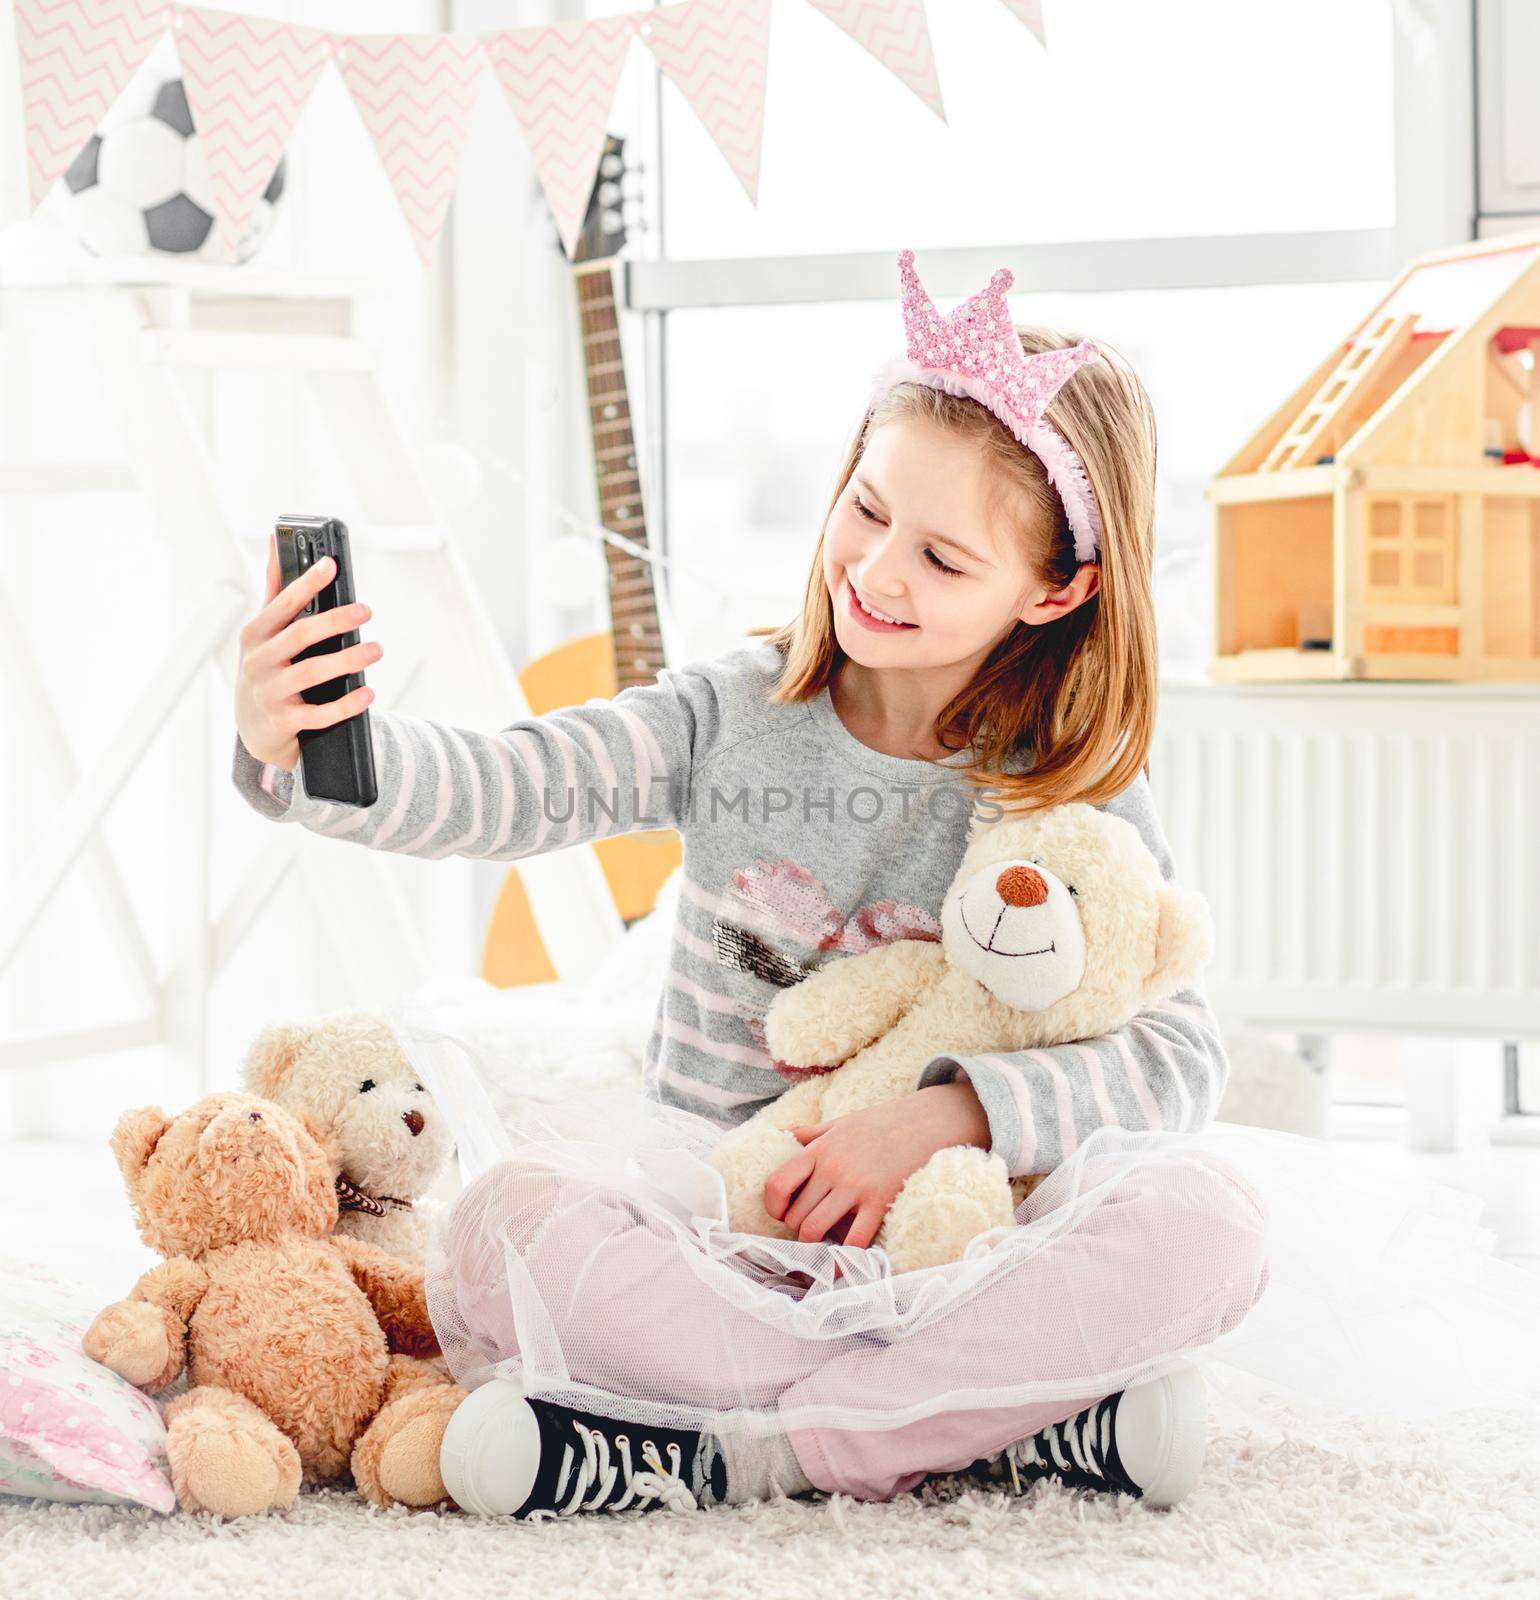 Girl taking selfie with teddy bear by GekaSkr